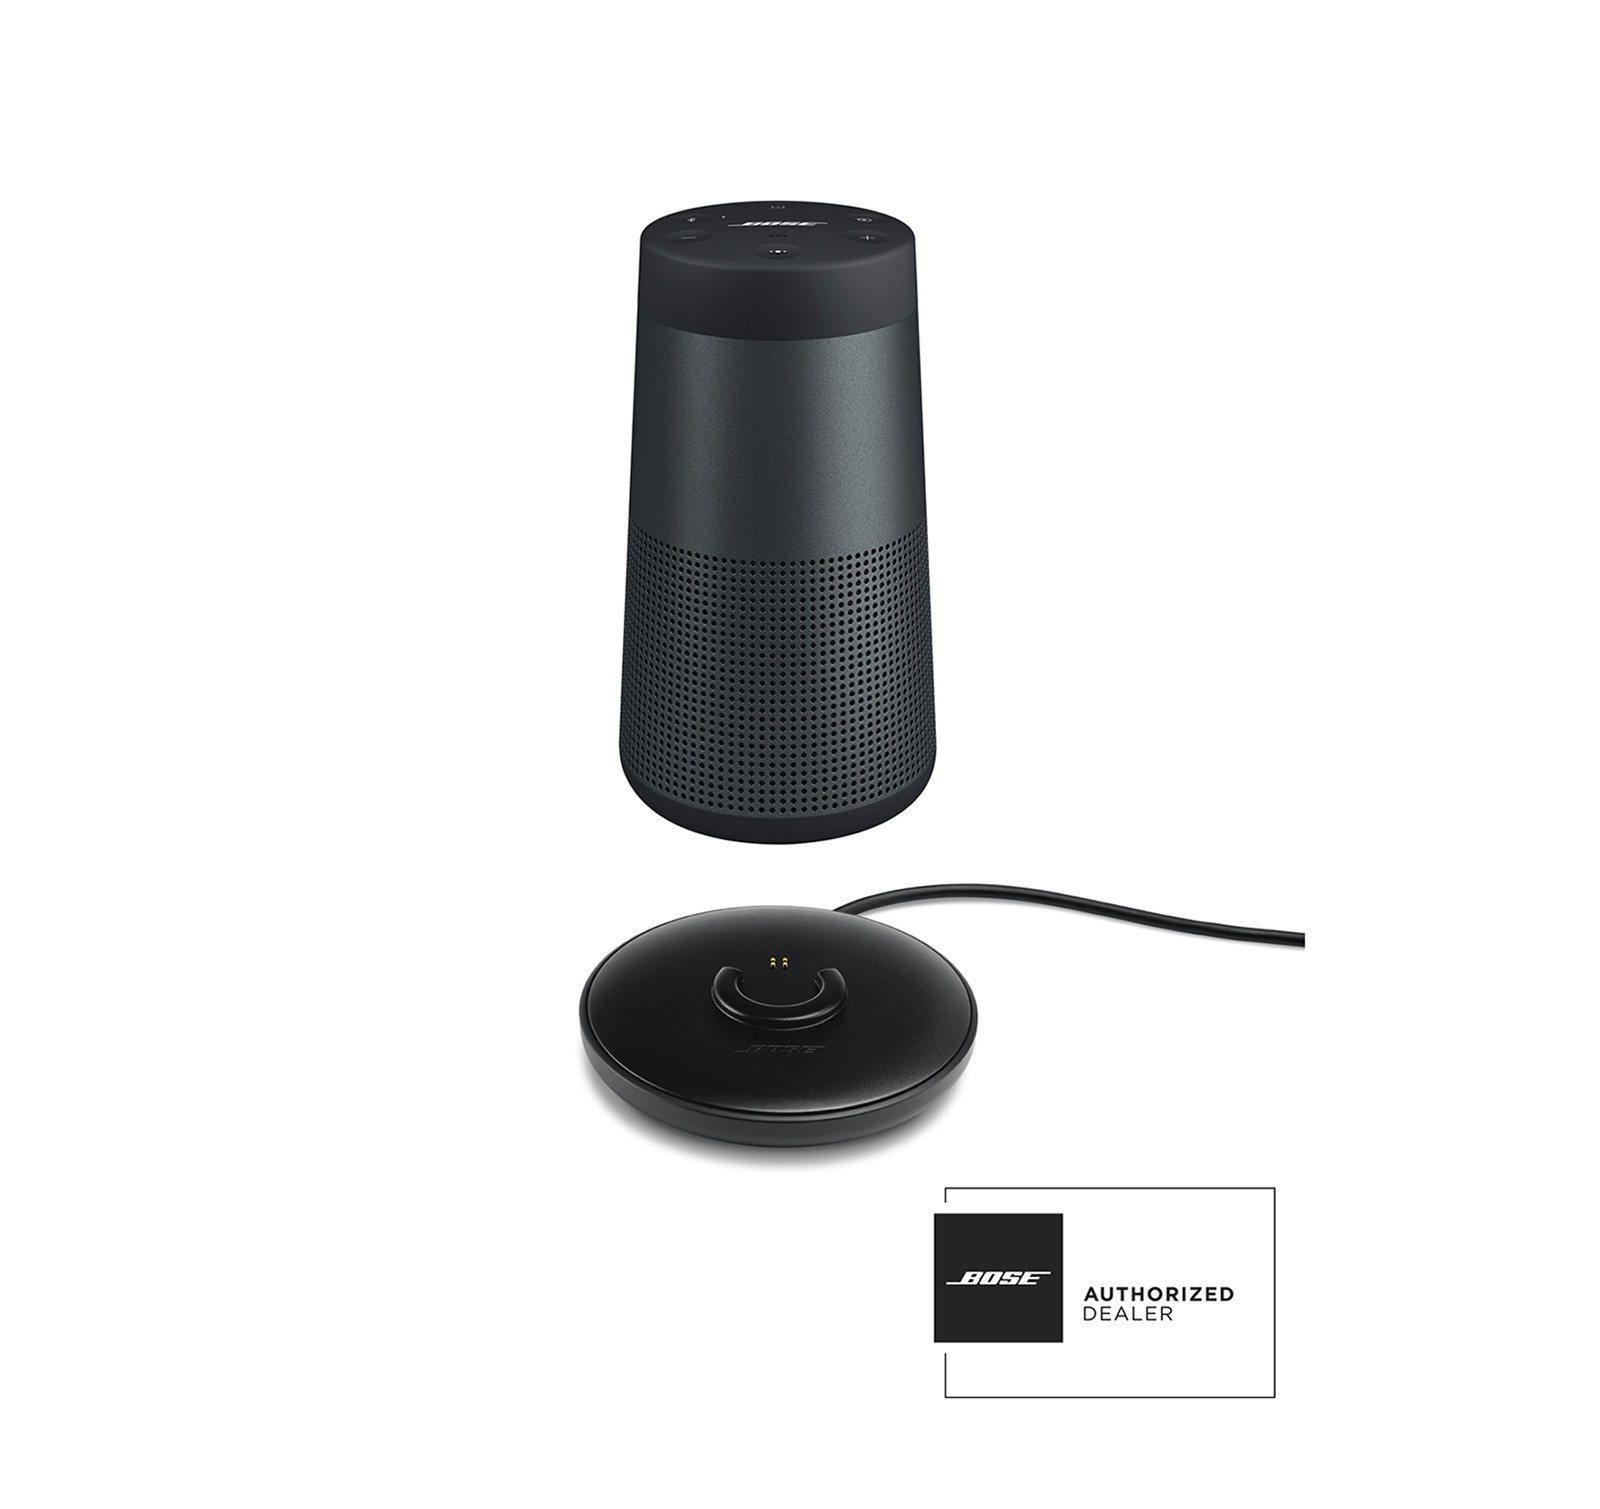 Loa Bose SoundLink Revolve Bluetooth chính hãng, giá tốt | Xuân Vũ Audio